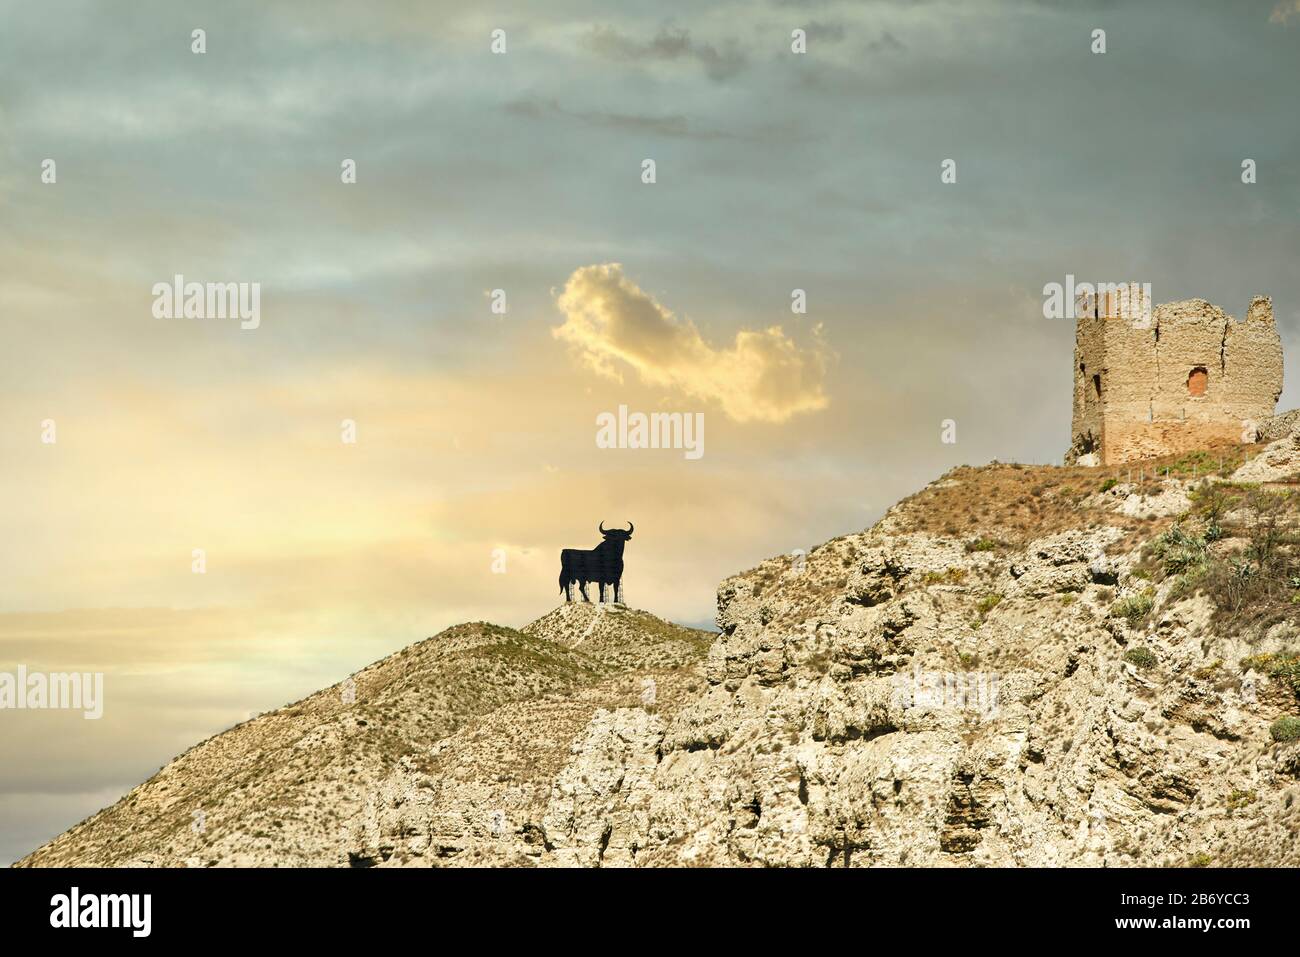 Silhouette de taureau, publicité typique de sherry Osborne Brandy.Espagne Banque D'Images